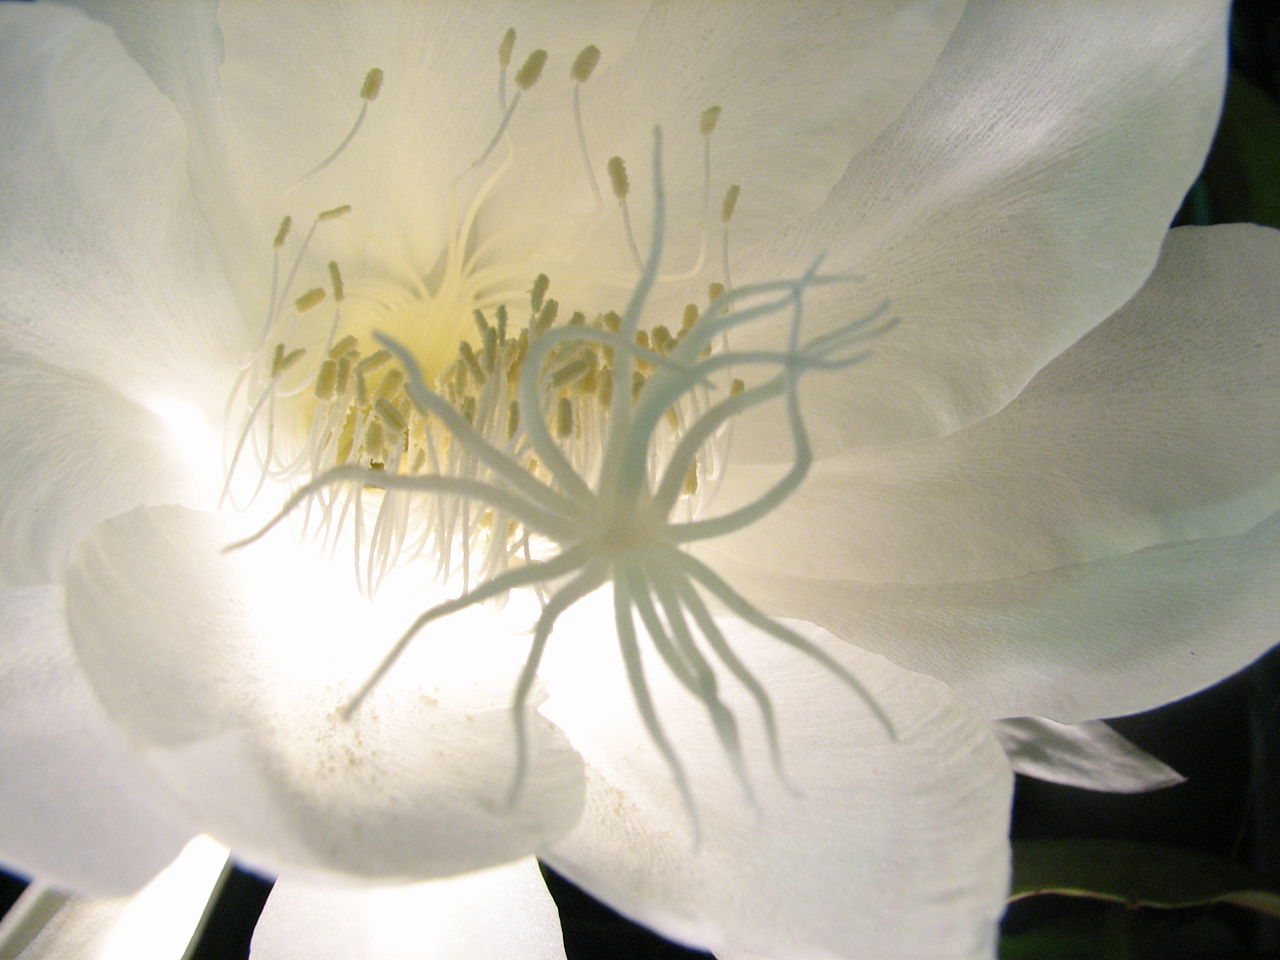 Tổng hợp những hình ảnh đẹp ý nghĩa về hoa quỳnh - [Kích thước hình ảnh: 1280x960 px]